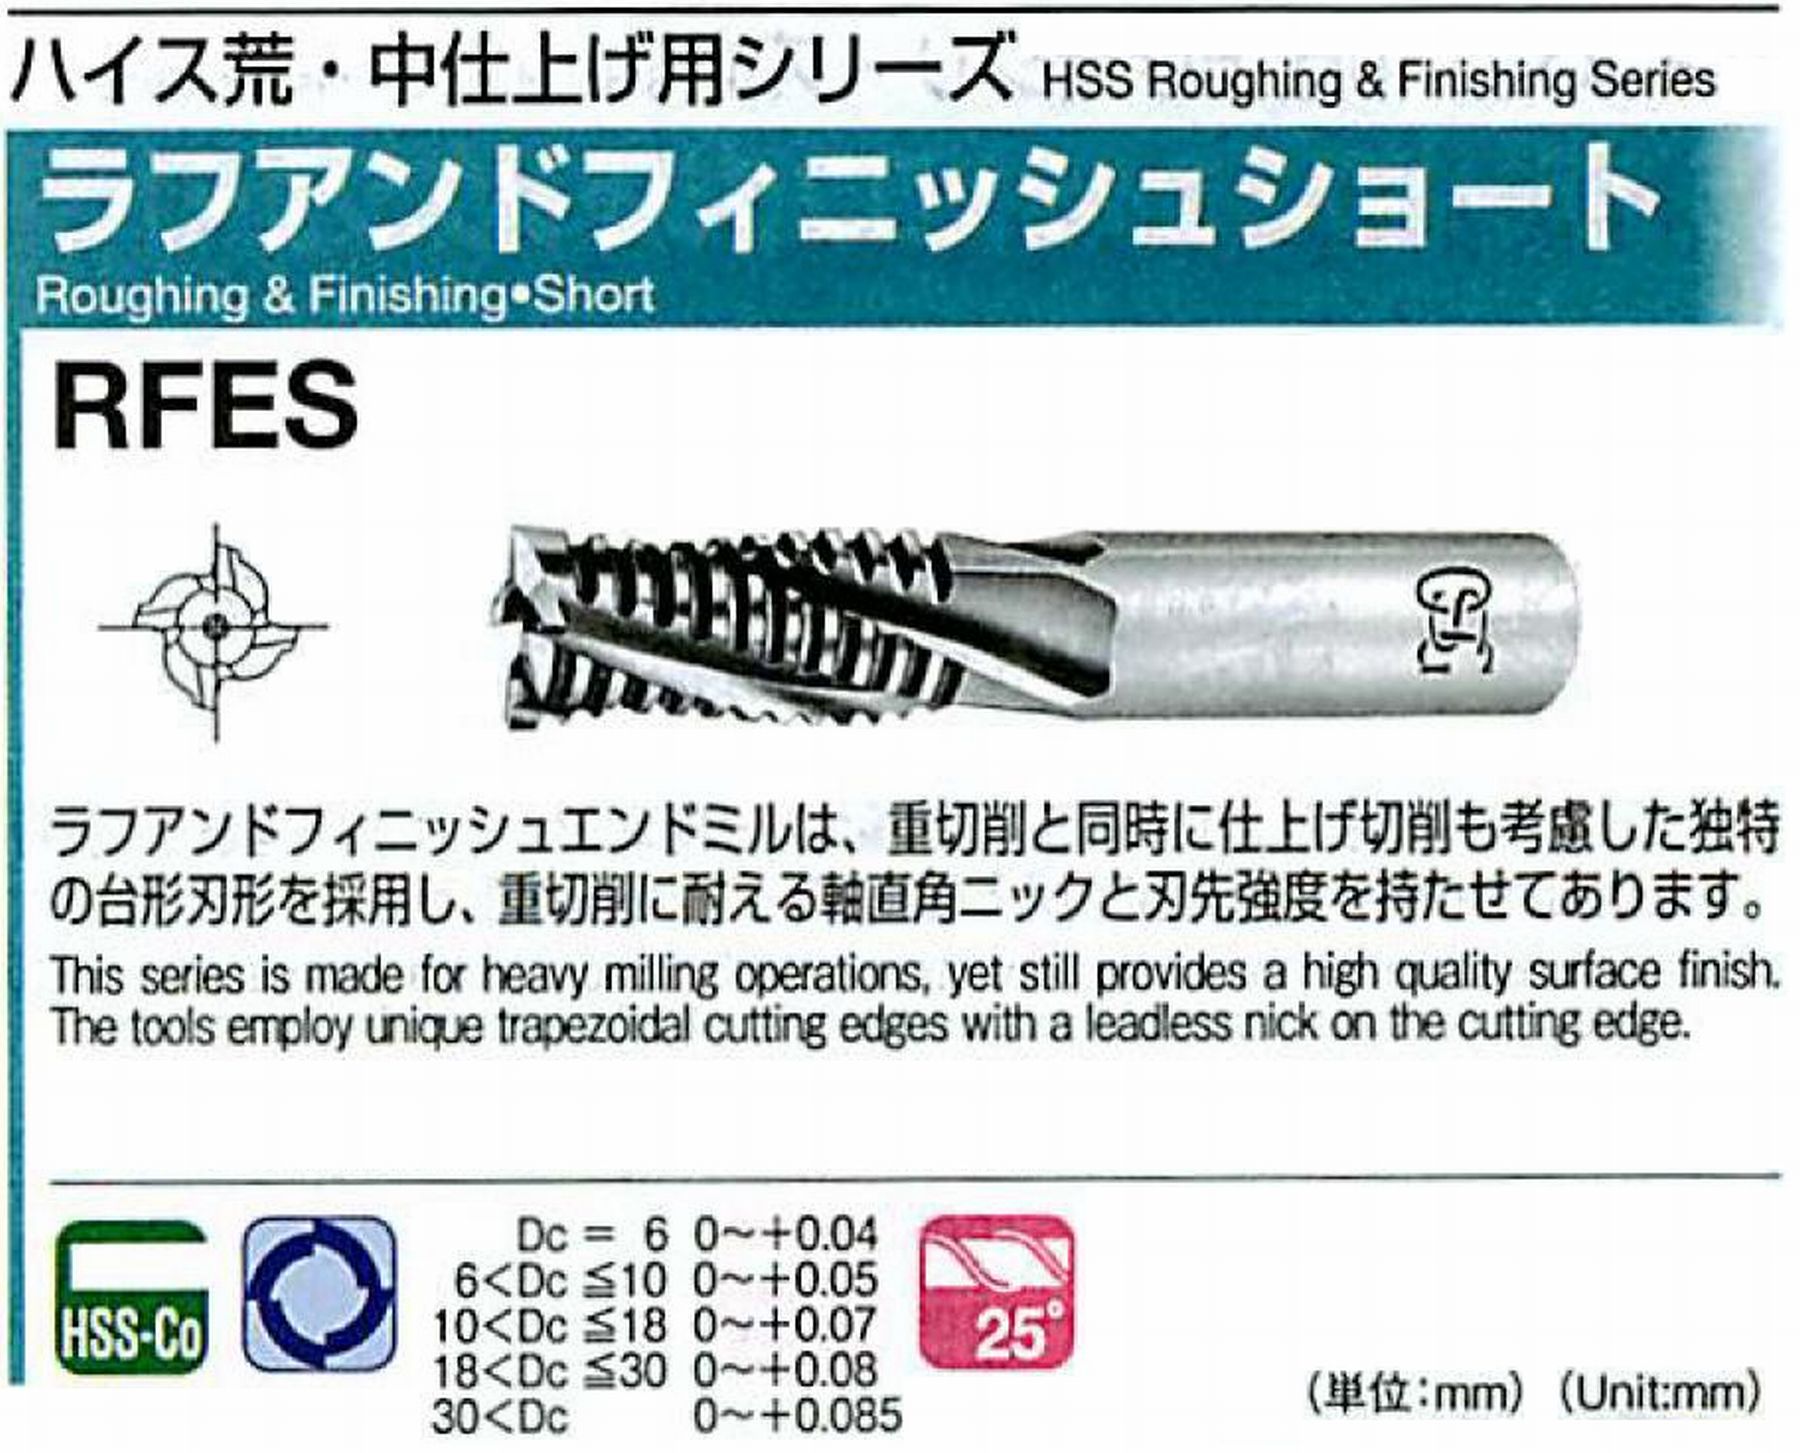 オーエスジー/OSG ラフアンドフィニッシュ ショート RFES 外径22 全長110 刃長45 シャンク径20mm 刃数5